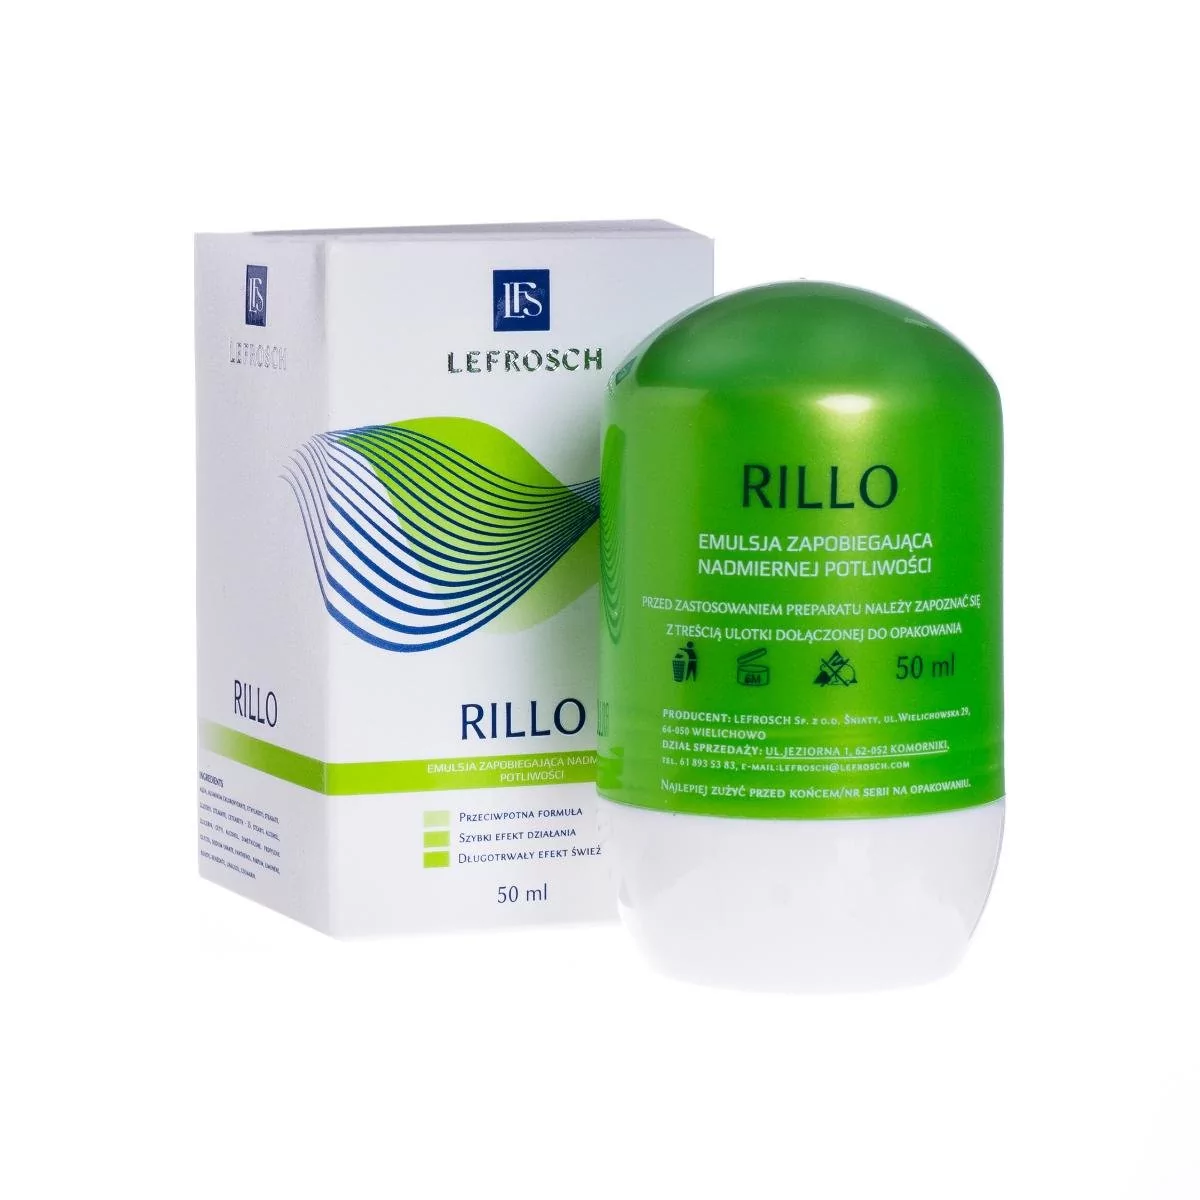 Lefrosch RILLO Emulsja zapobiegająca nadmiernej potliwości - 50 ml